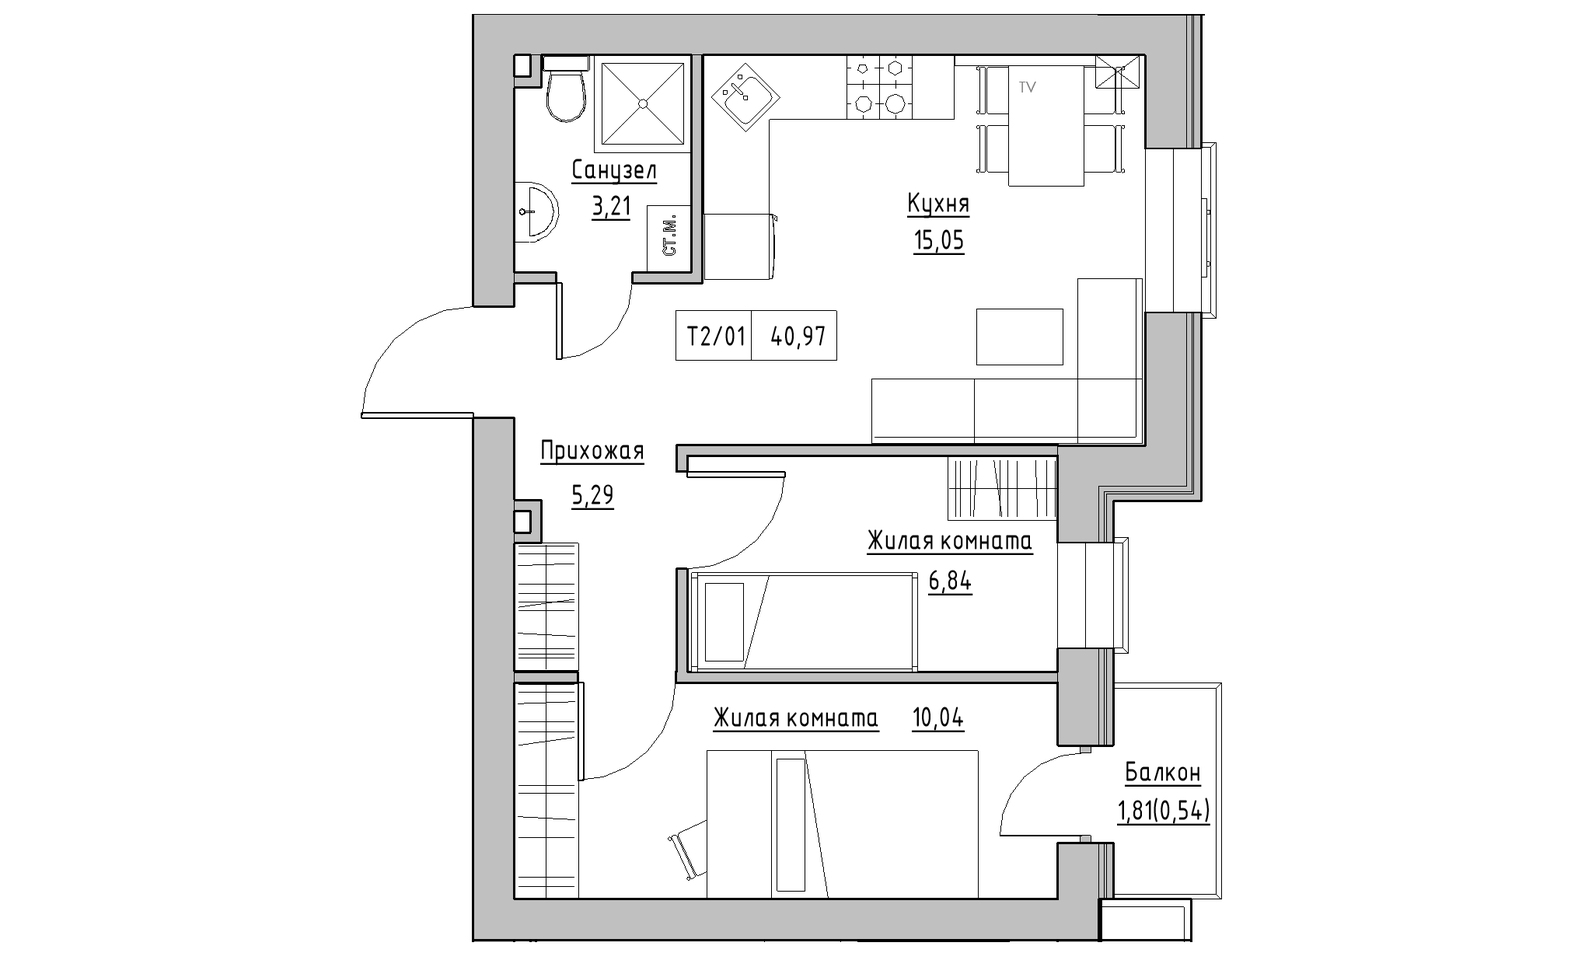 Планування 2-к квартира площею 40.97м2, KS-014-03/0010.